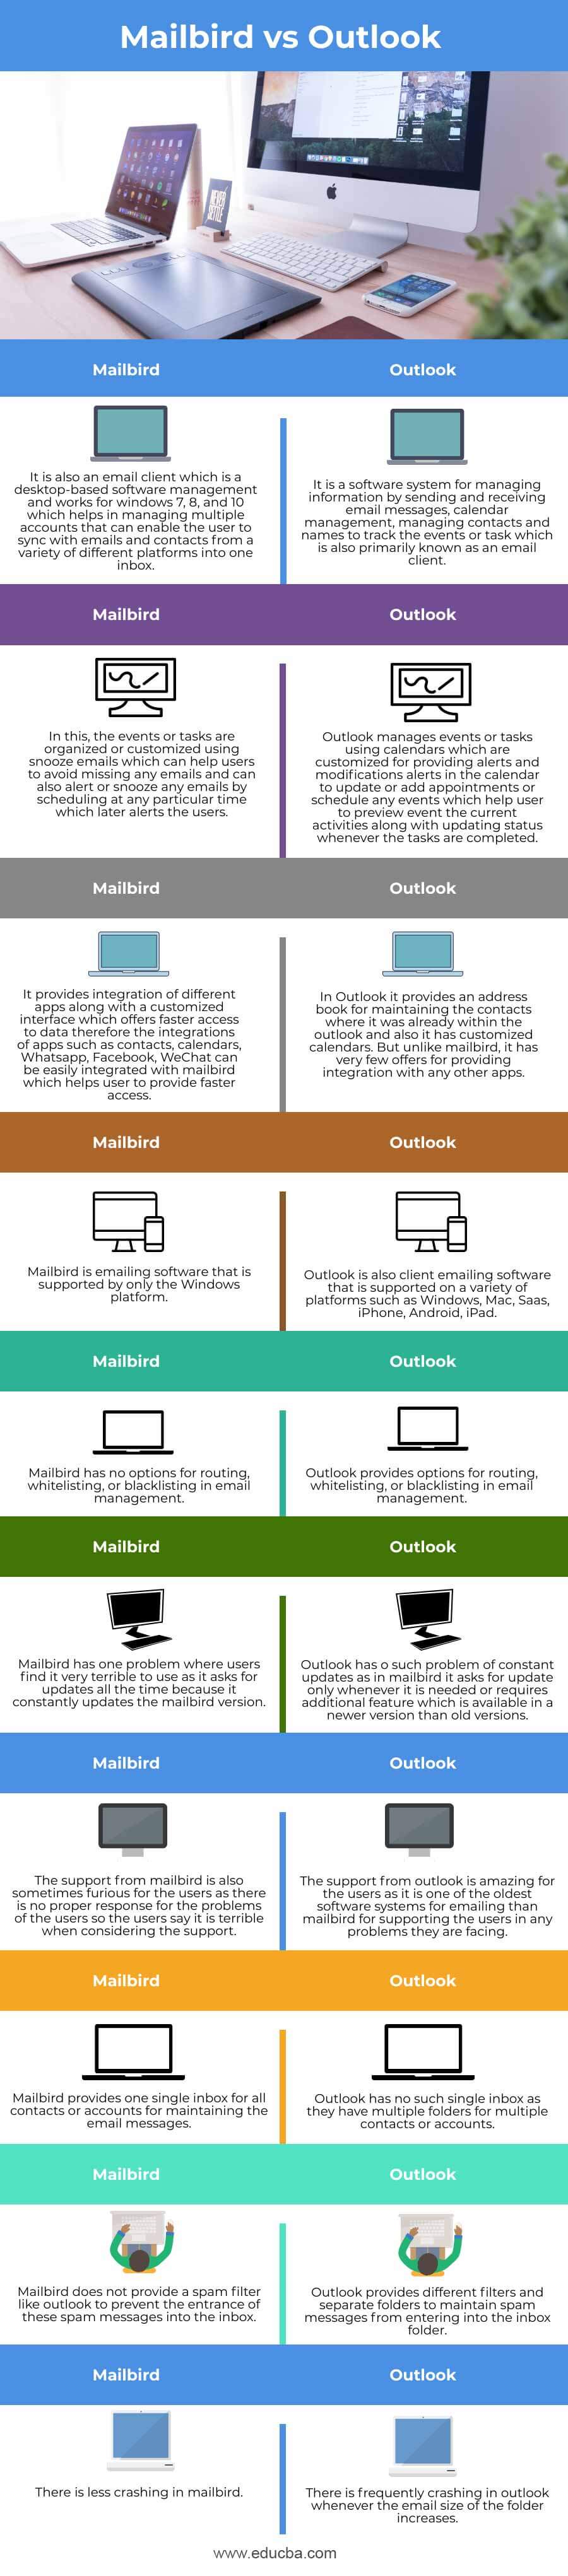  Mailbird-vs-Outlook-info